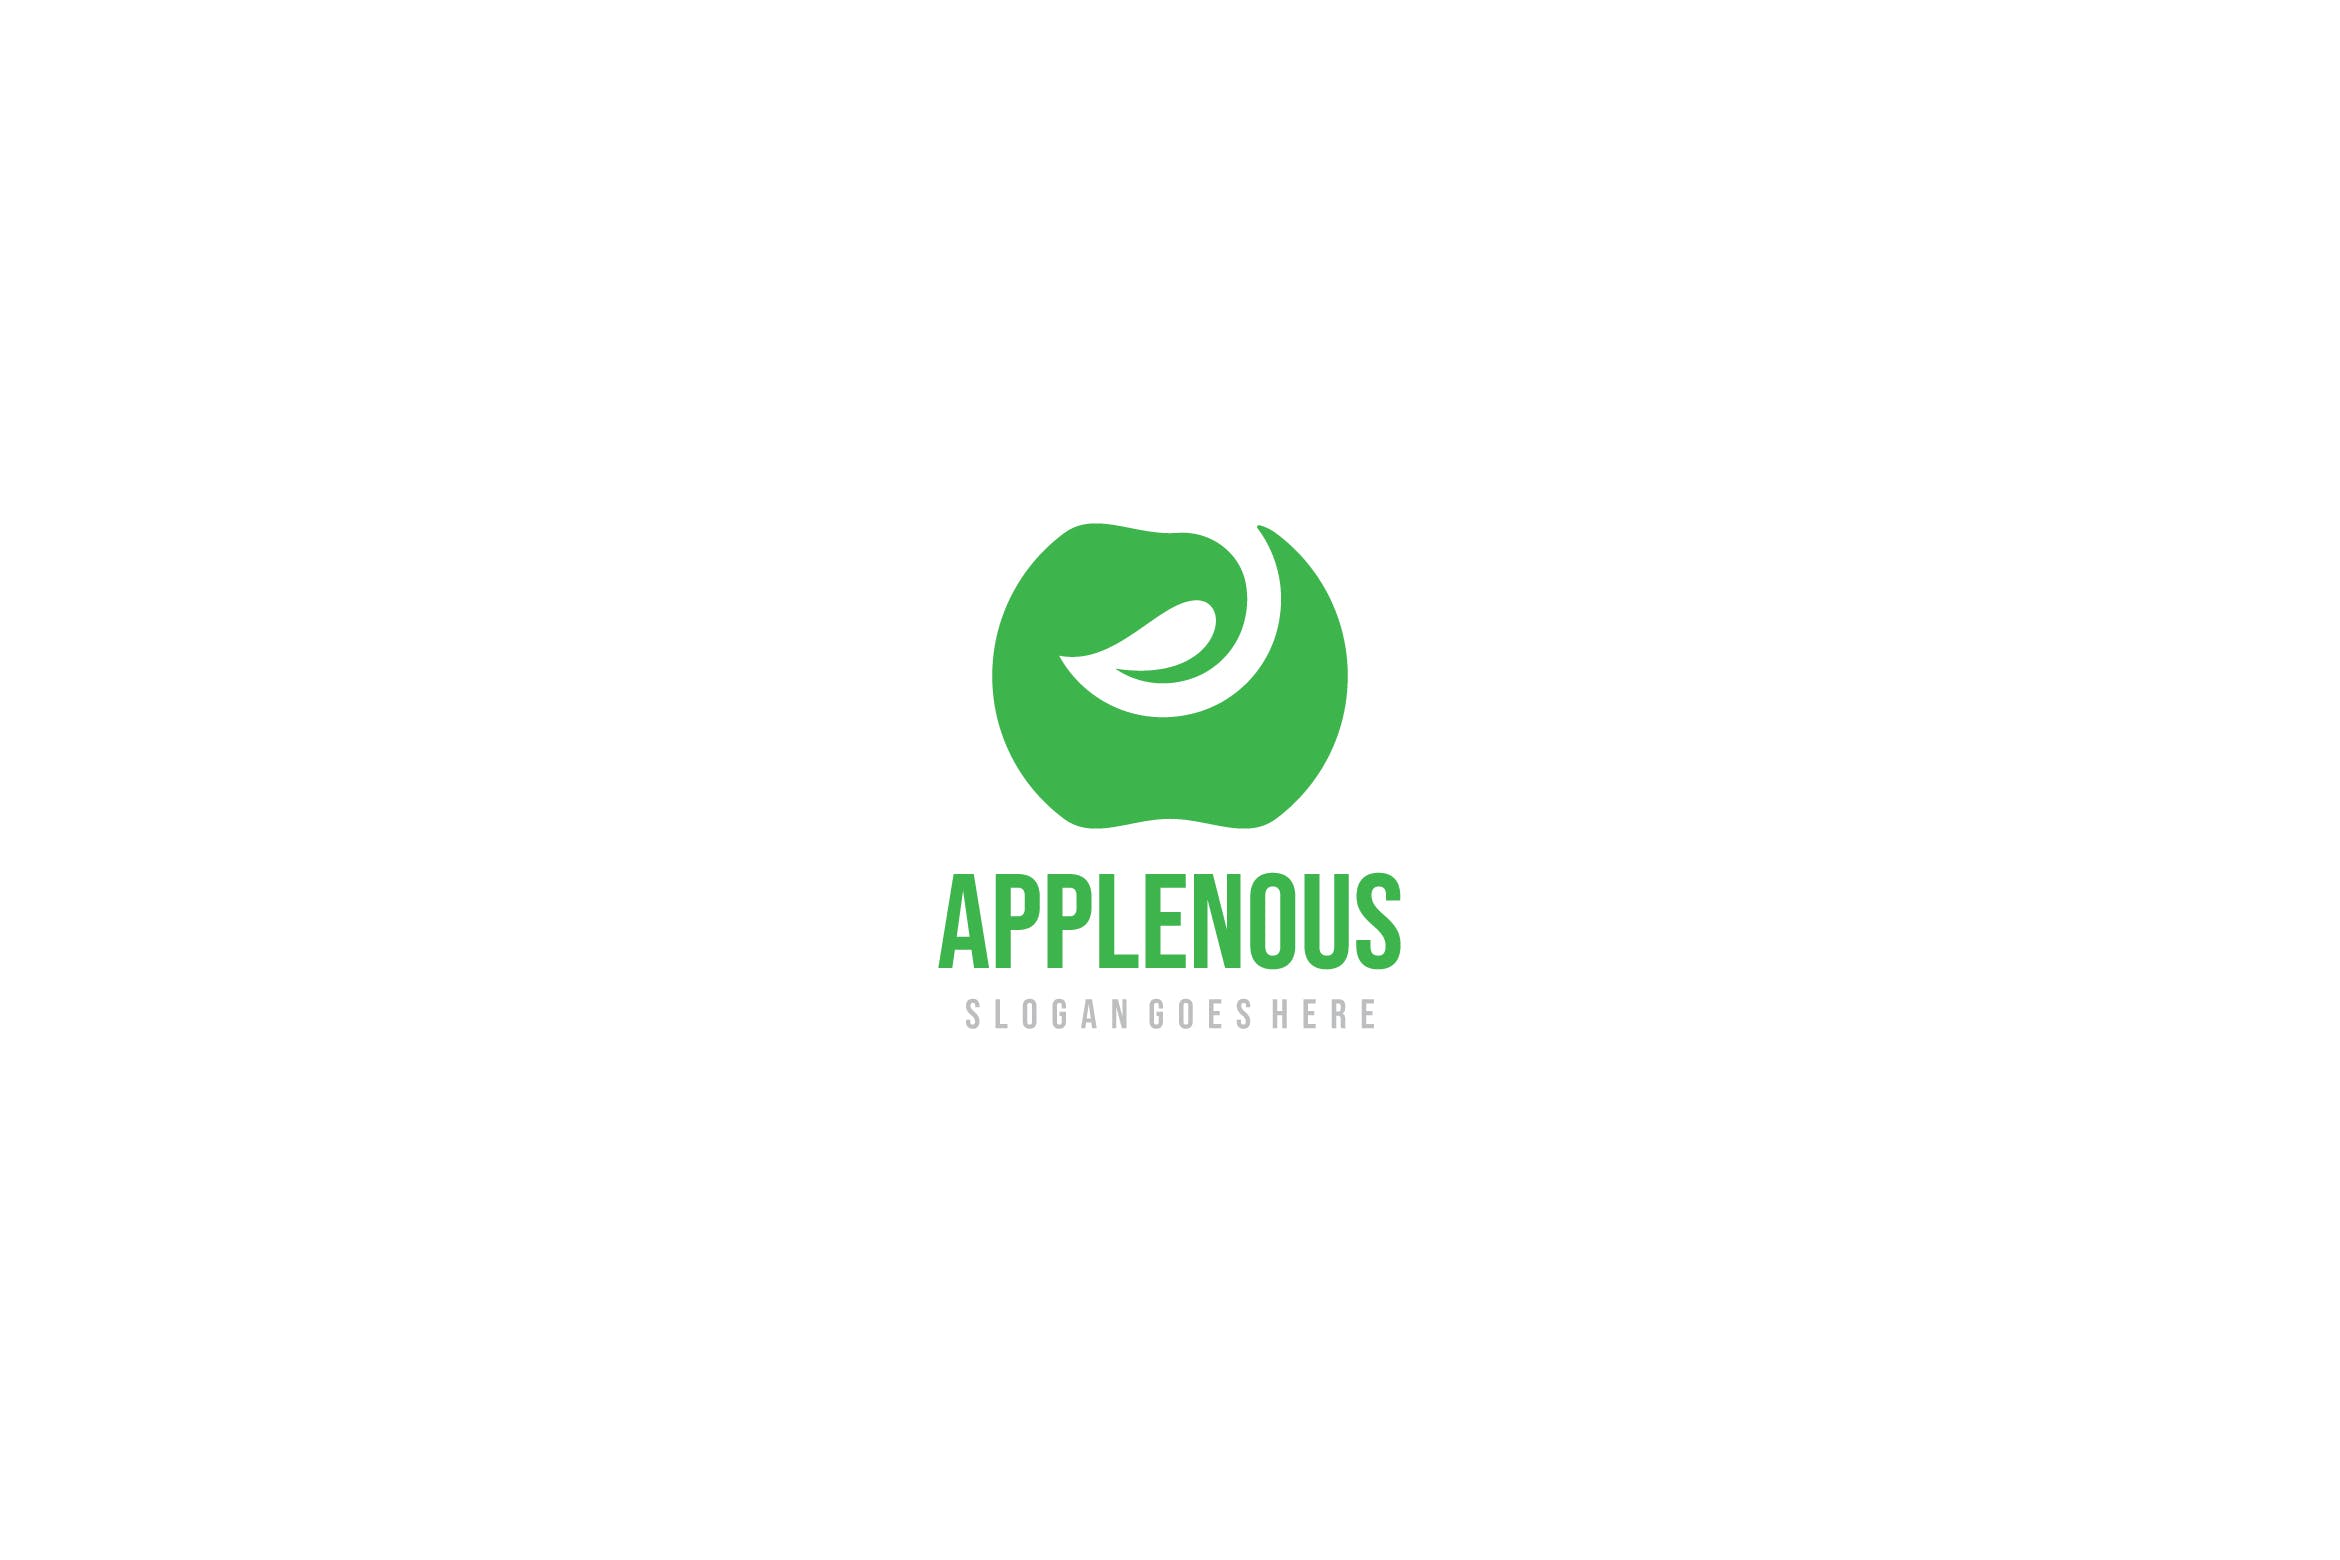 创意苹果图形Logo设计素材库精选模板 Apple Logo插图